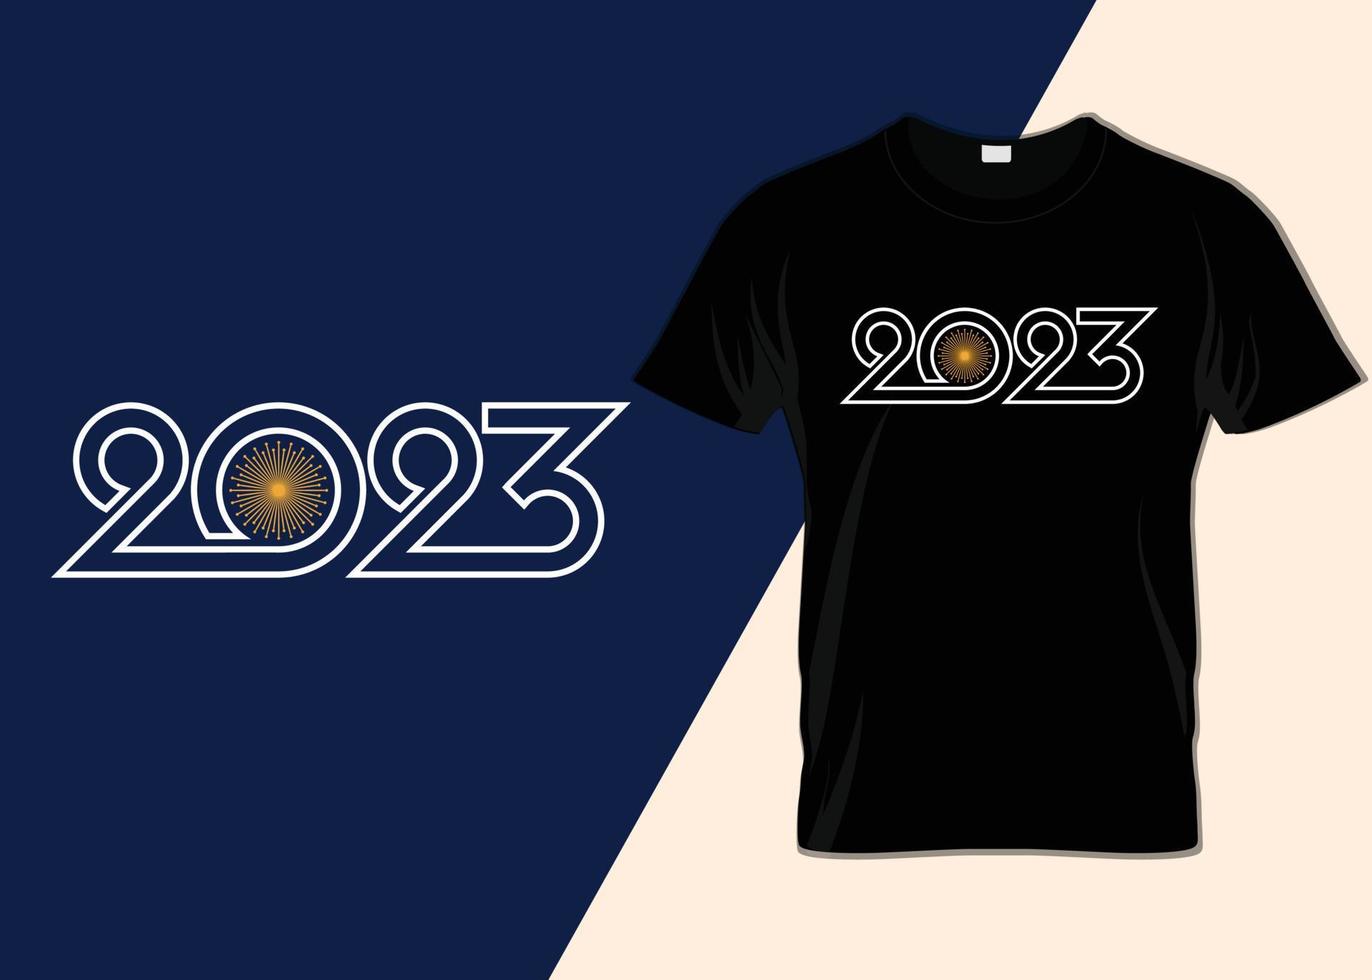 gott nytt år 2023 typografi t-shirt design vektor